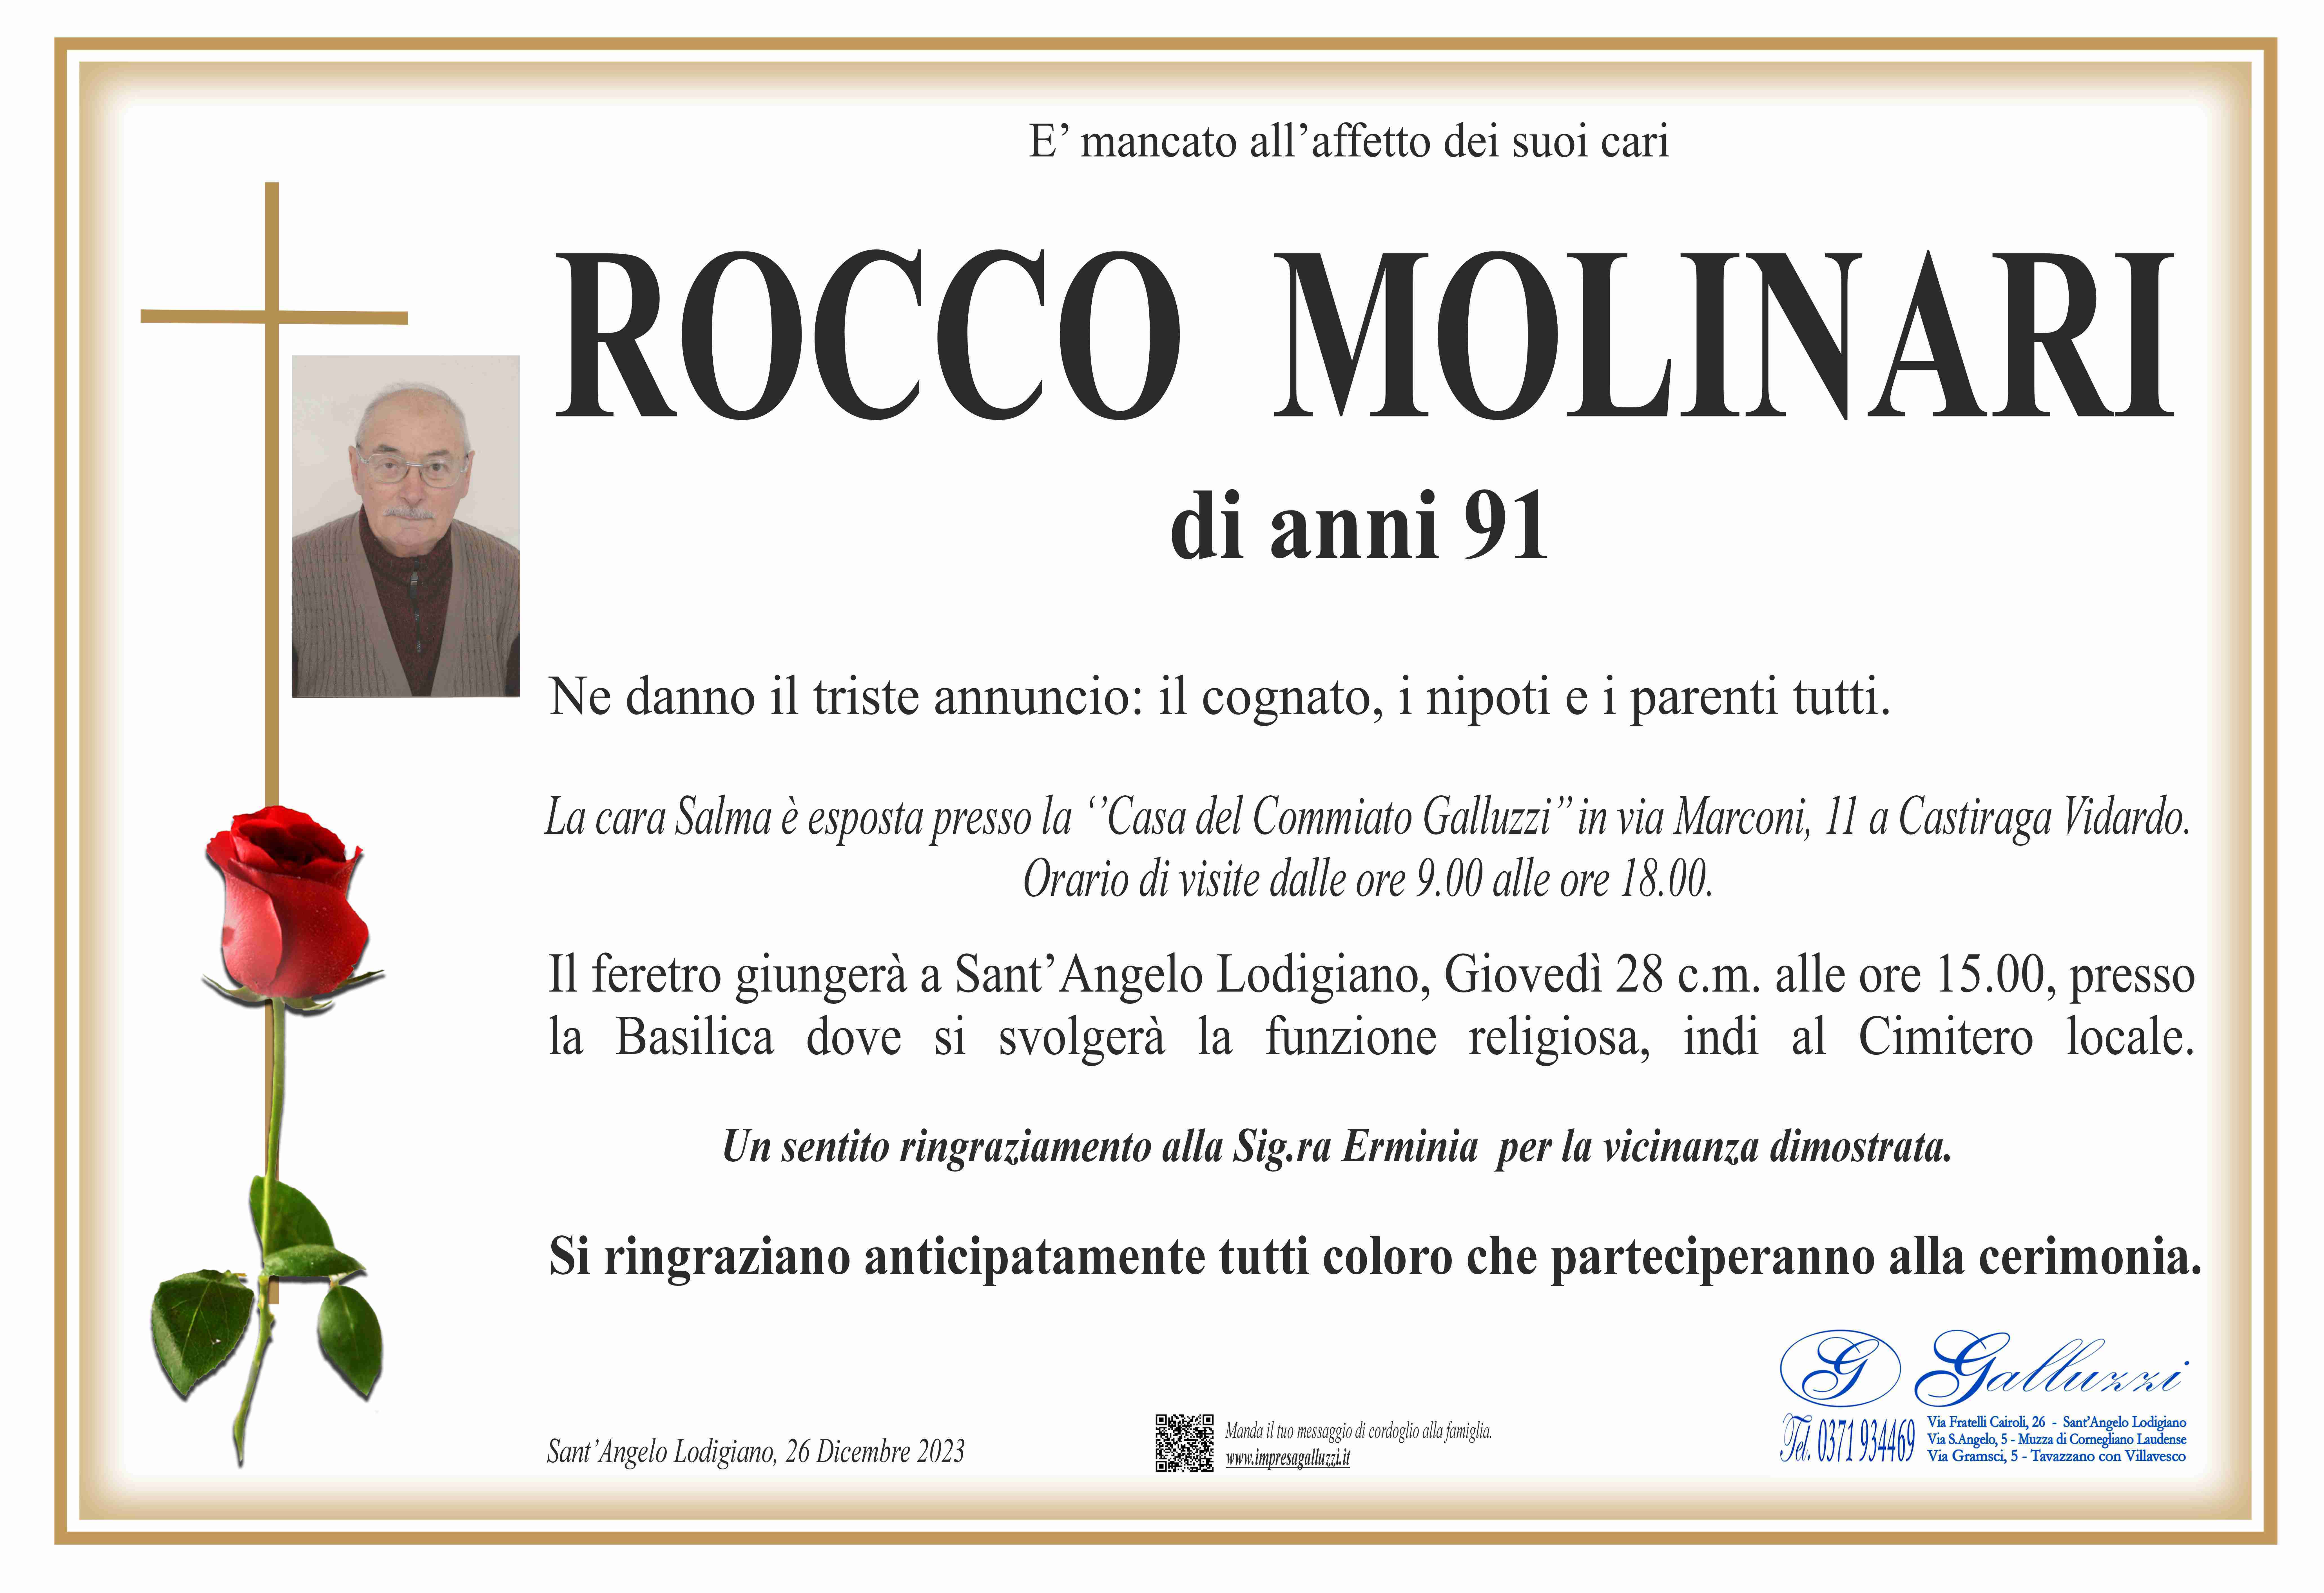 Rocco Molinari